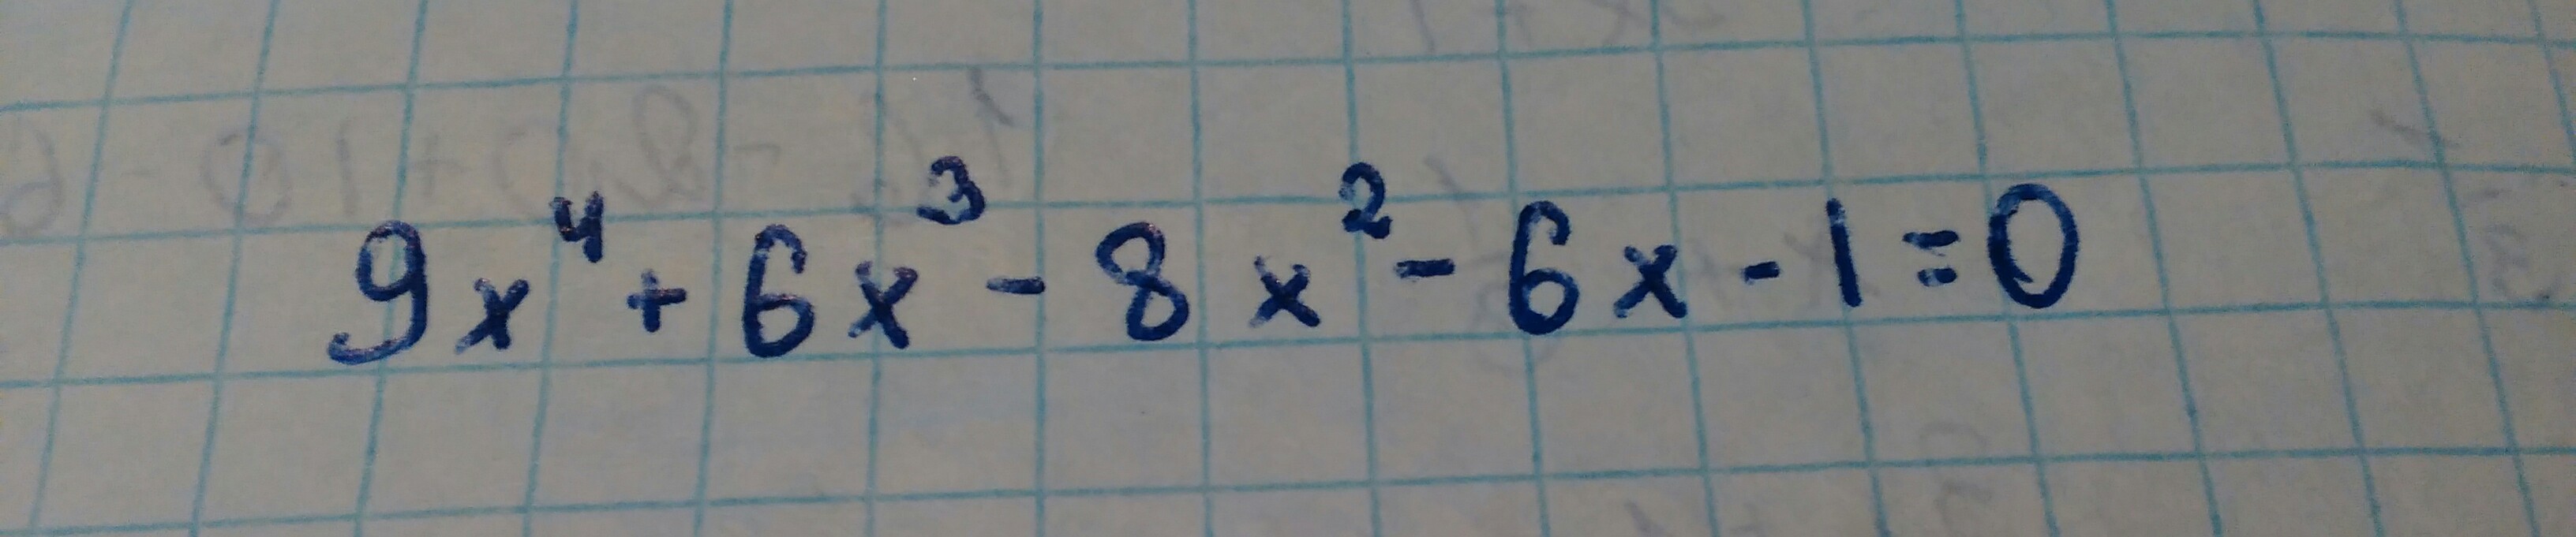 Решите уравнение так, чтобы было понятно девятикласснику (смотрите фото)?